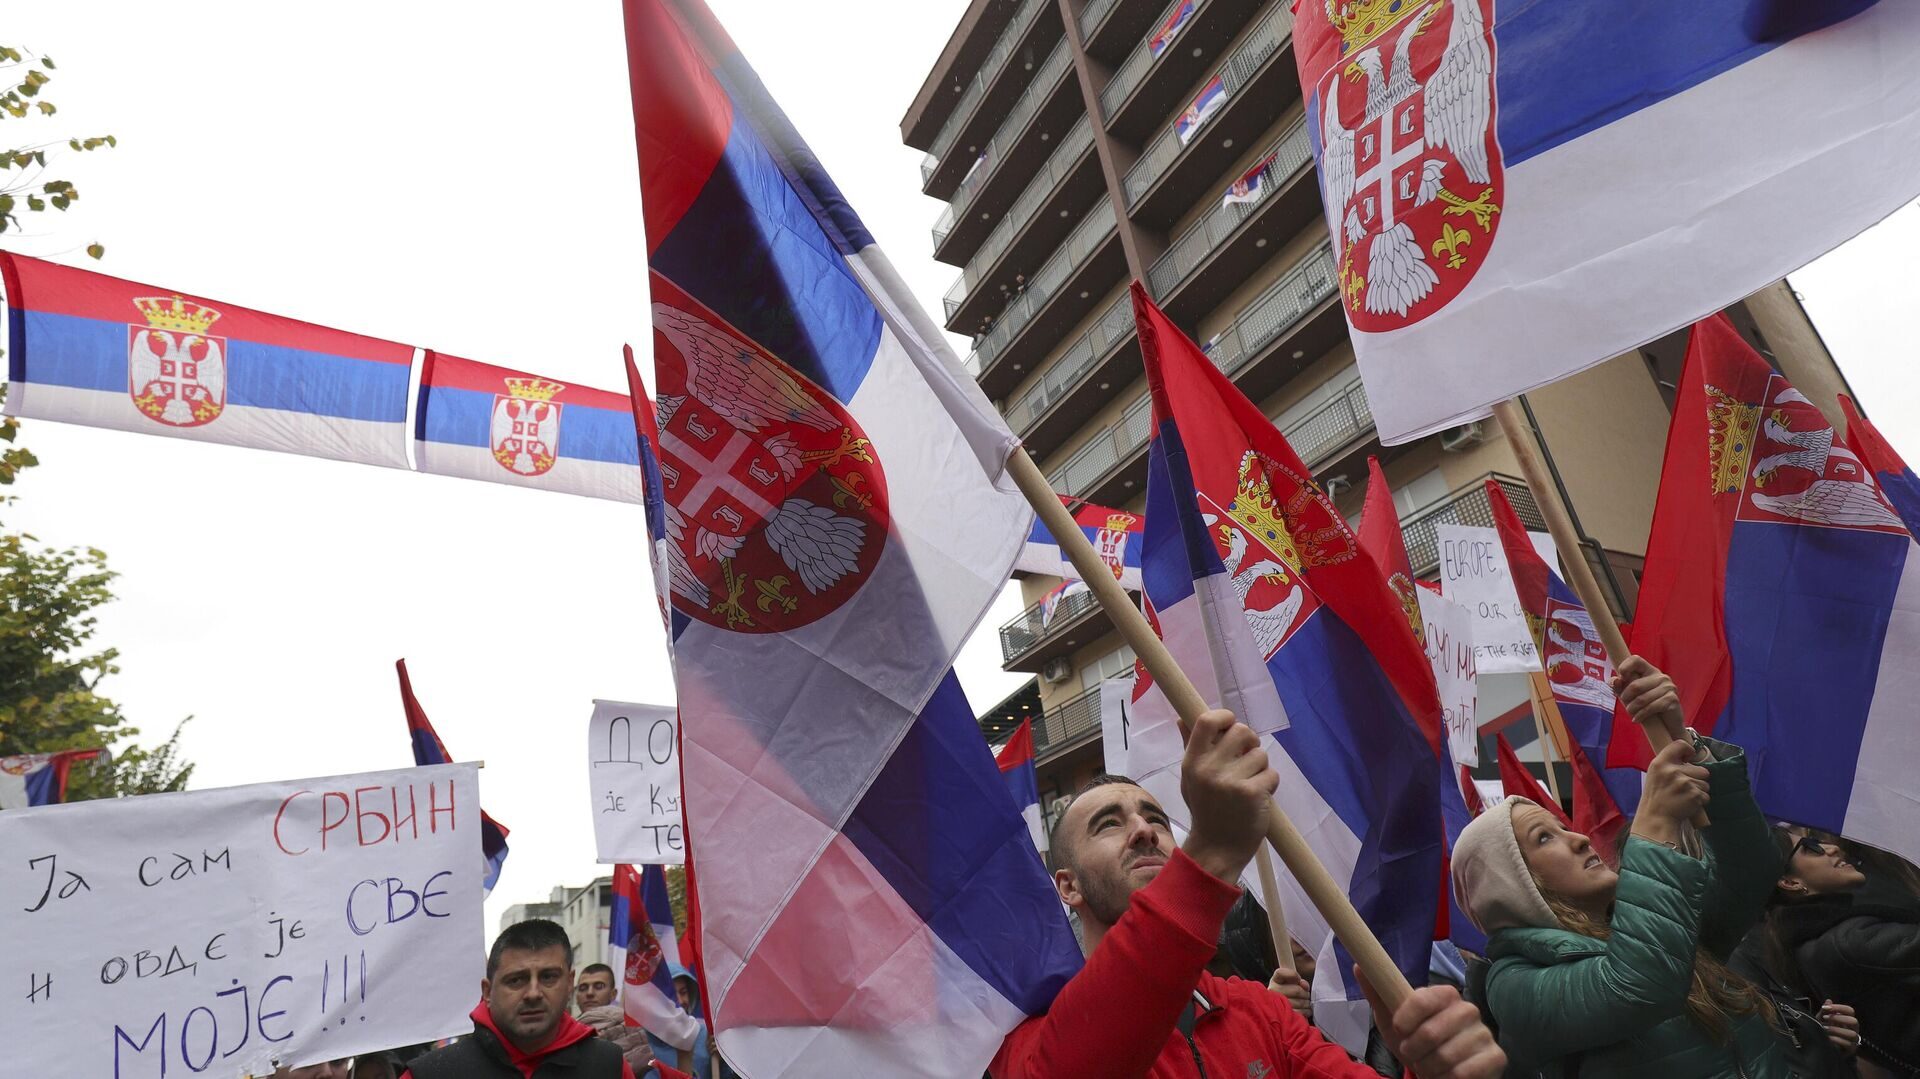 Serbia flags